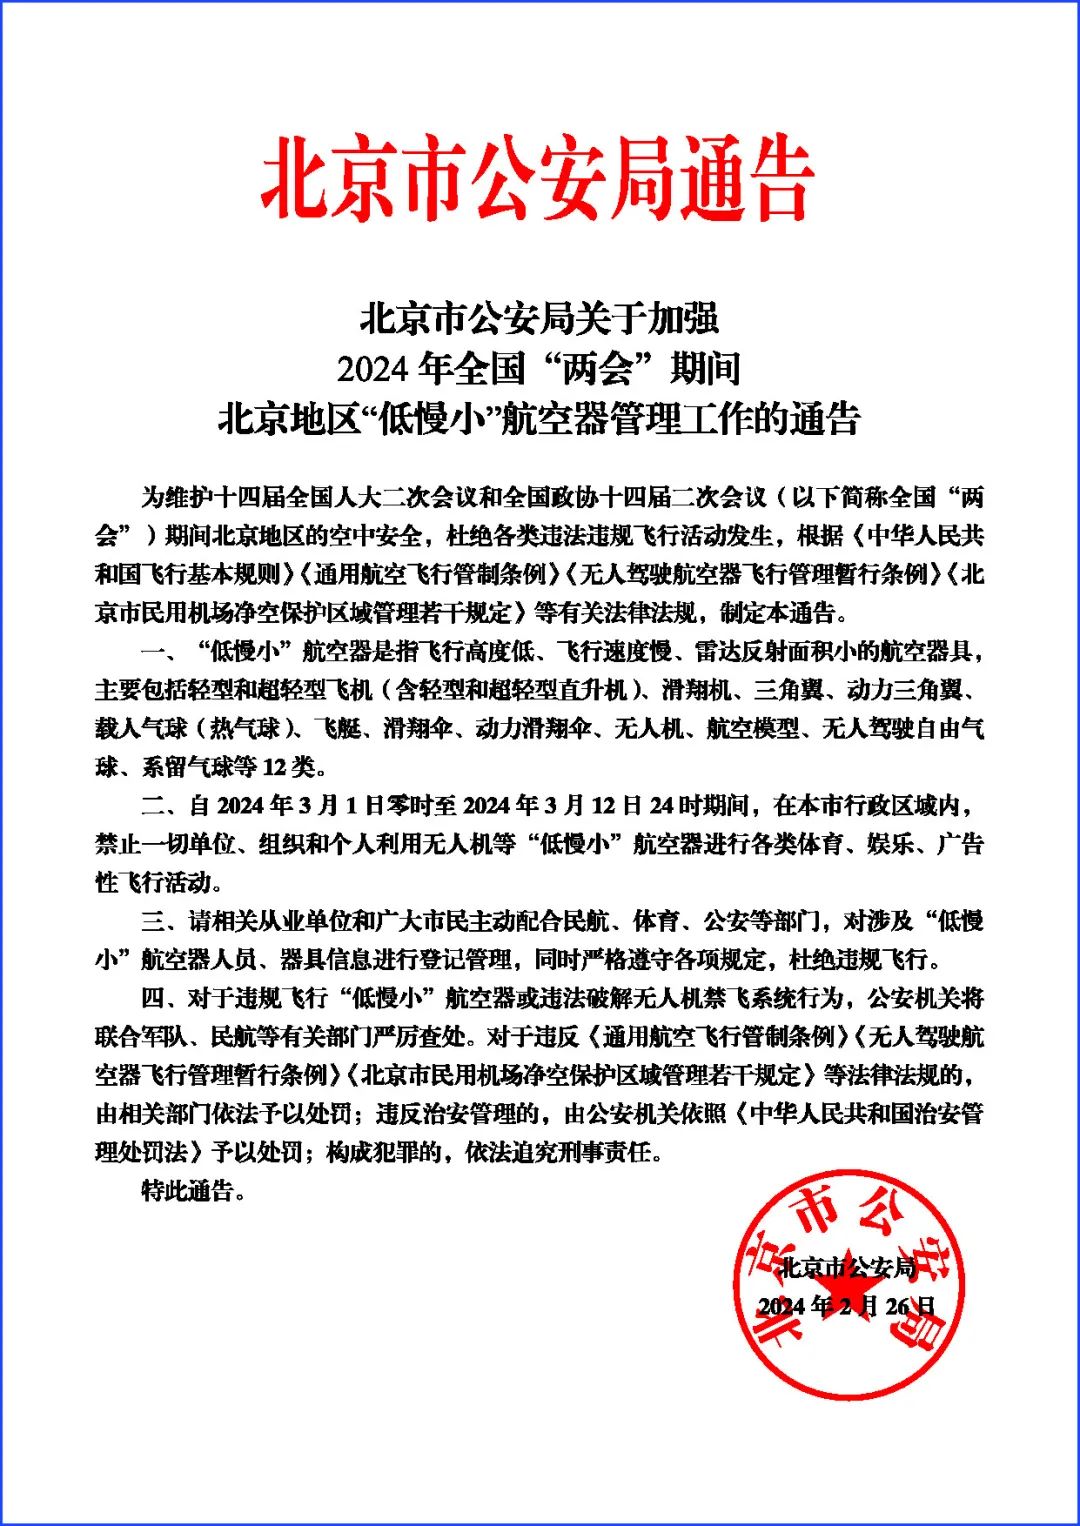 北京市公安局发布关于加强2024年全国“两会”期间北京地区“低慢小”航空器管理工作的通告